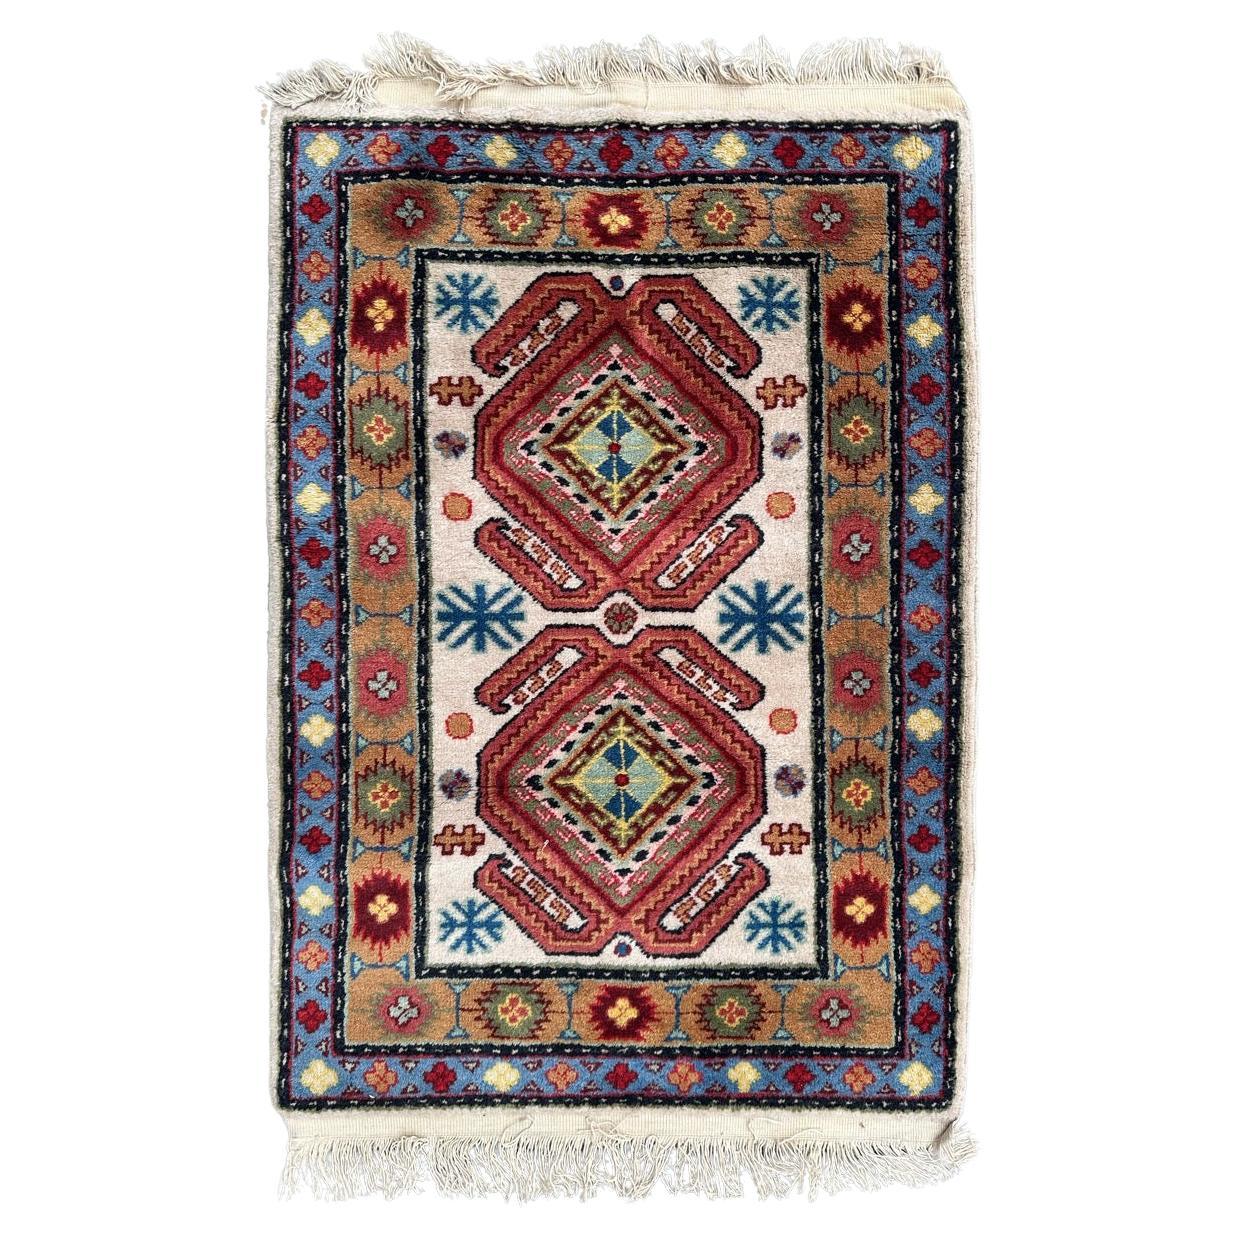 Bobyrug's hübscher kleiner kaukasischer Sinkiang-Teppich im Vintage-Design